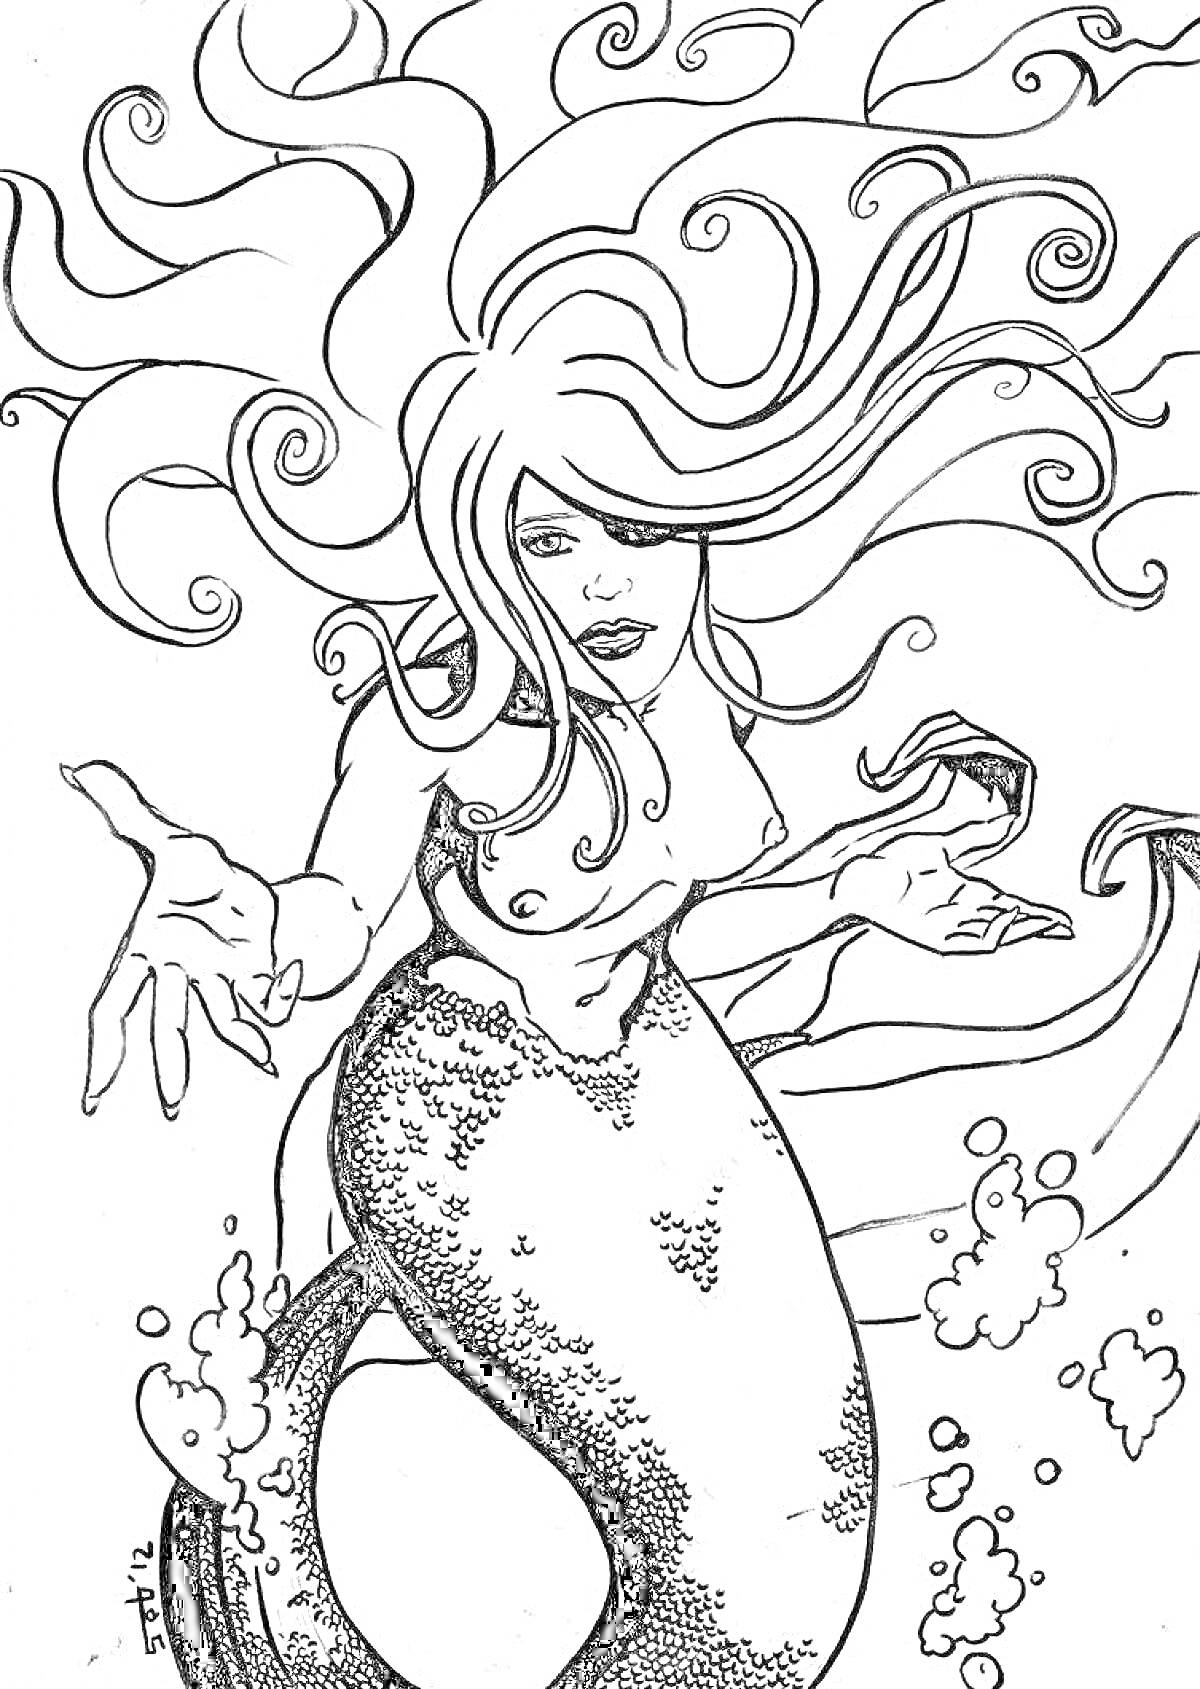 РаскраскаБольшая сирена: сирена с длинными волосами и рыбьим хвостом, протягивающая руки